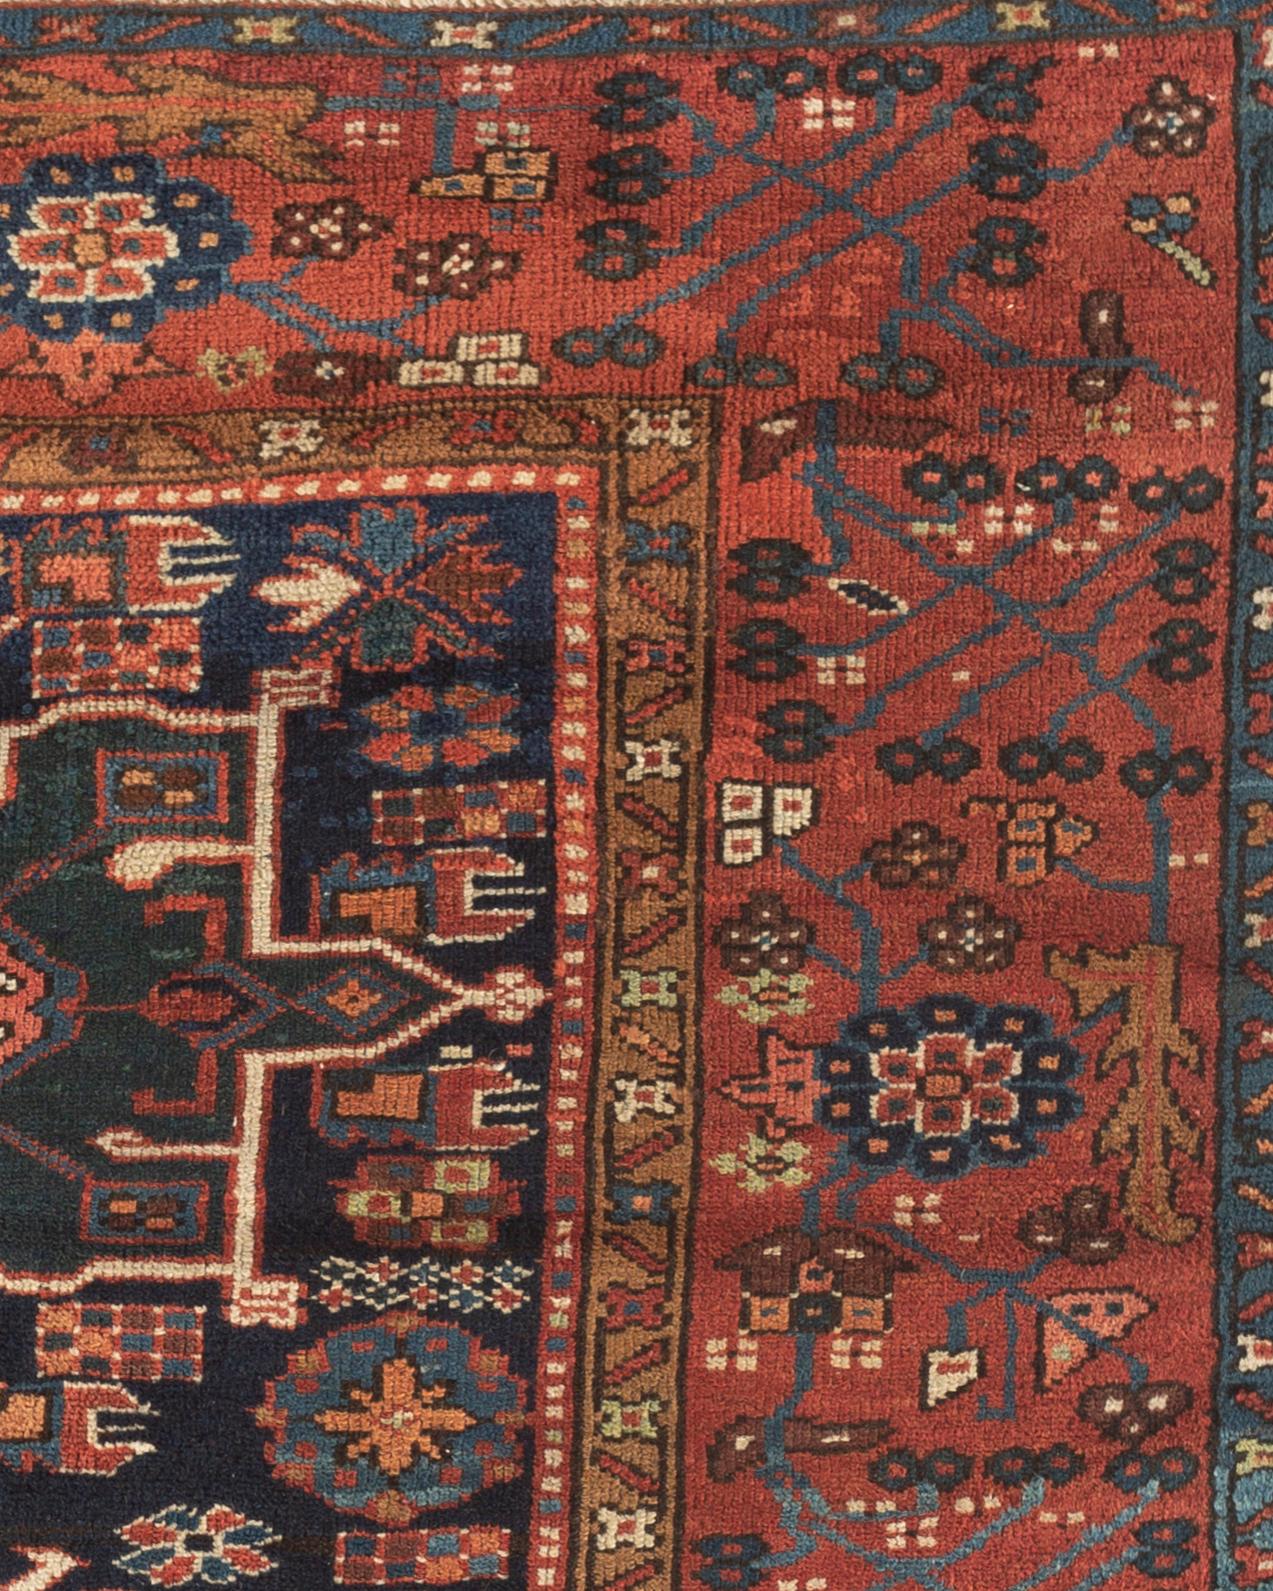 Antiker Karaja-Teppich, um 1900. Antike Karaja-Teppiche (Schwarze Berge) werden in der Nähe der kaukasischen Grenze gewebt und weisen kaukasische Stile und Motive auf. Ein reicher marineblauer Grund aus Indigo ist ein hervorstechendes Merkmal, das